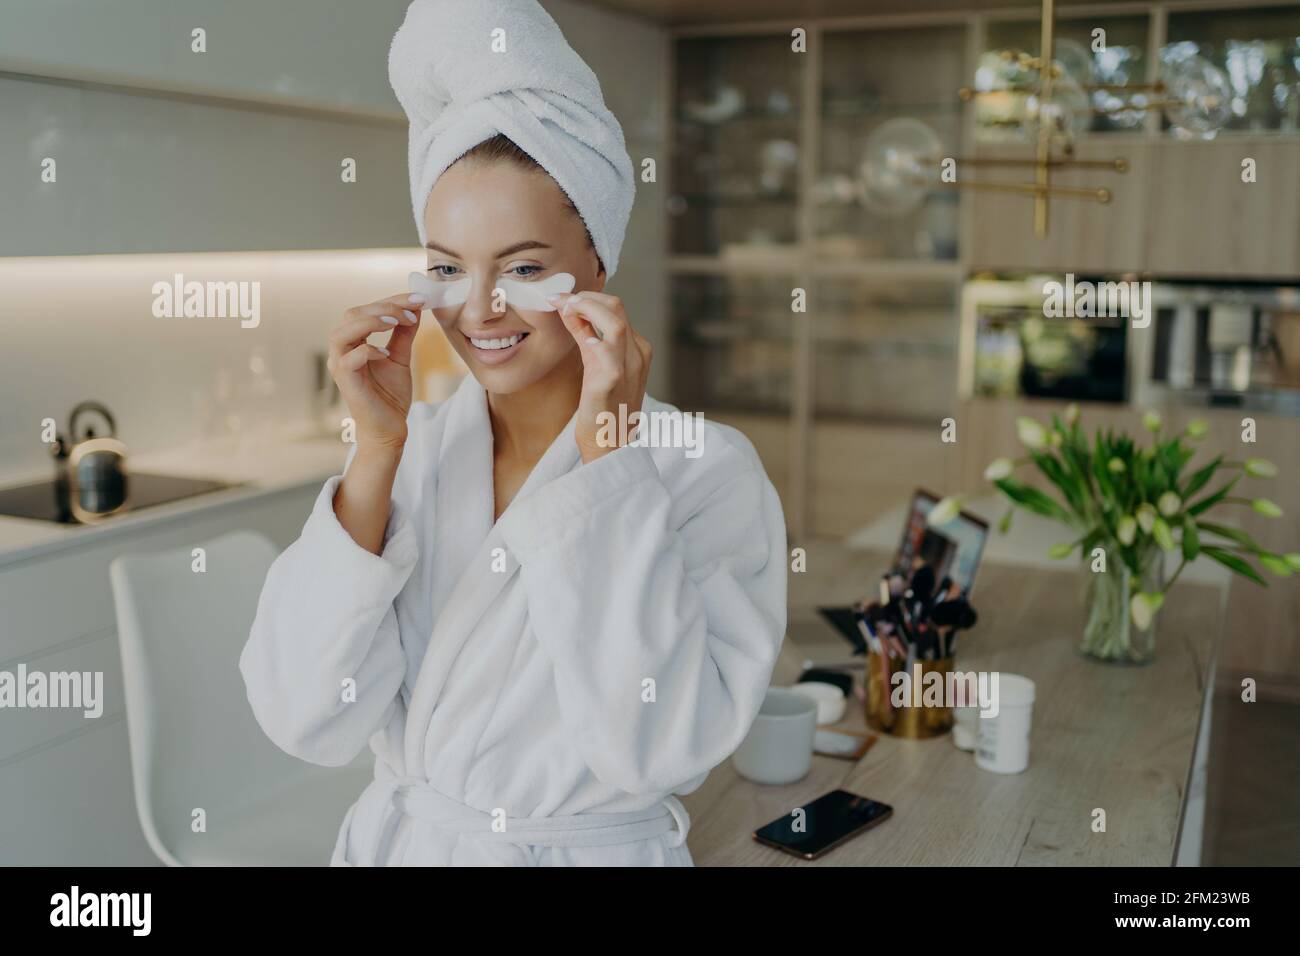 Donna felice in accappatoio e asciugamano sulla testa facendo la bellezza o procedure cosmetiche a casa Foto Stock